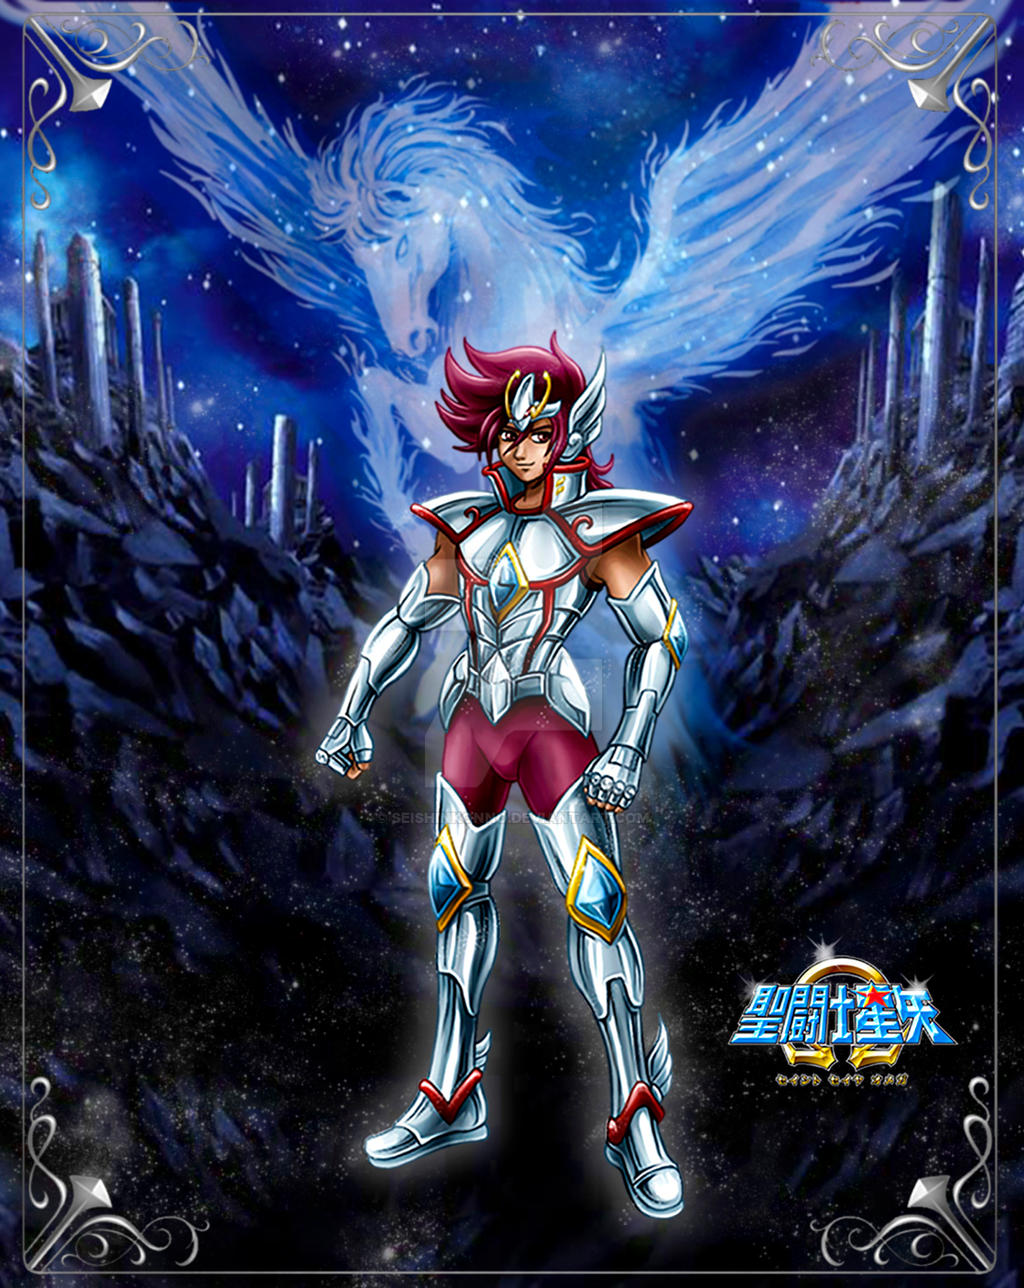 Saint Seiya Omega Ω, Op 1 - Pegasus Fantasy